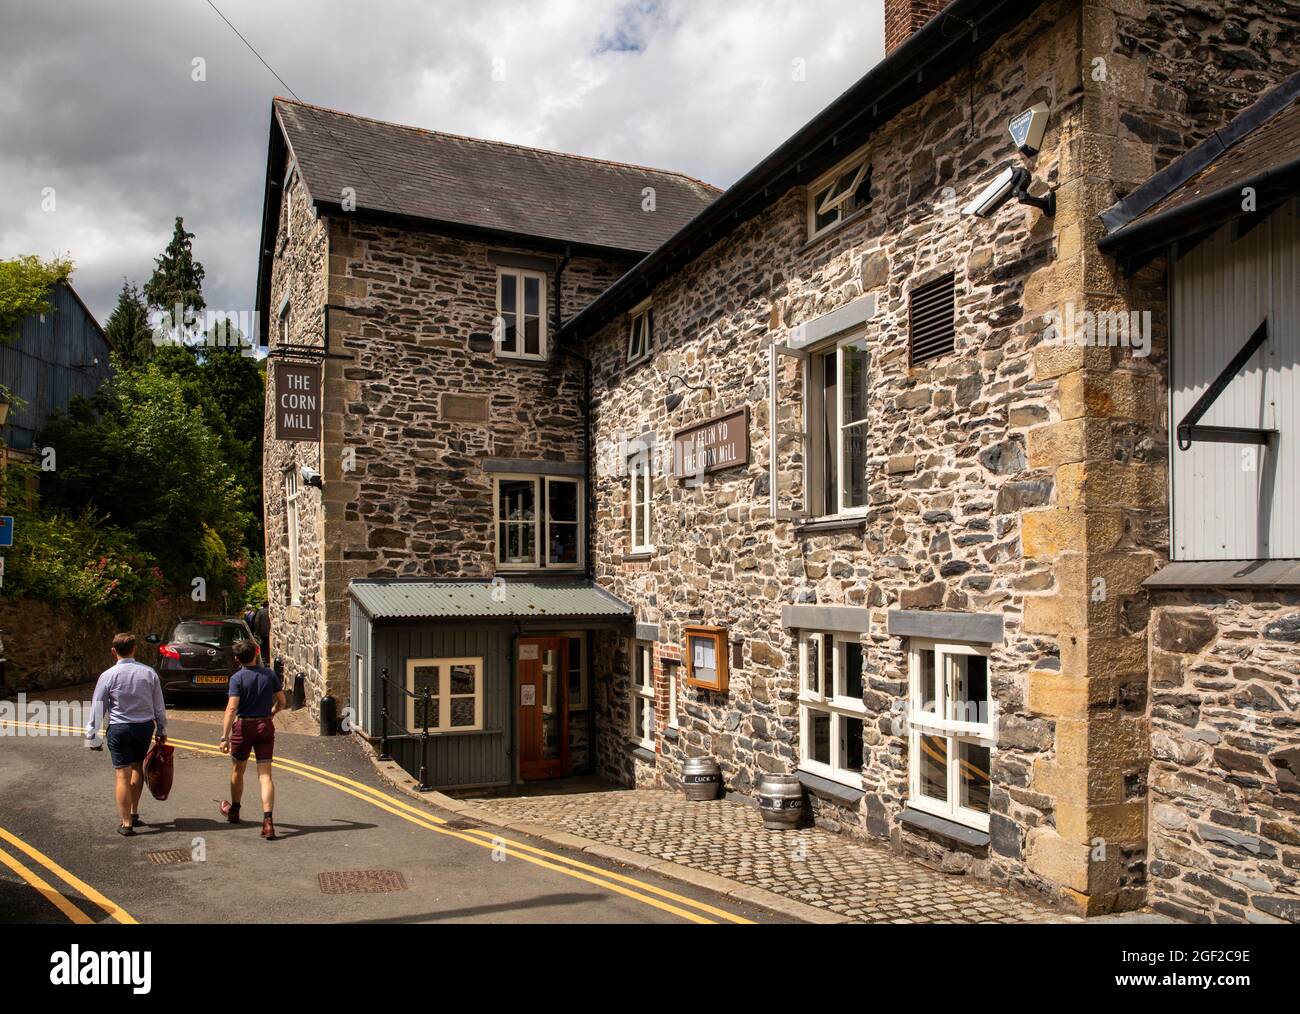 UK Wales, Clwyd, Llangollen, Dee Lane, Old Corn Mill, (Melin Yd) café Stock Photo